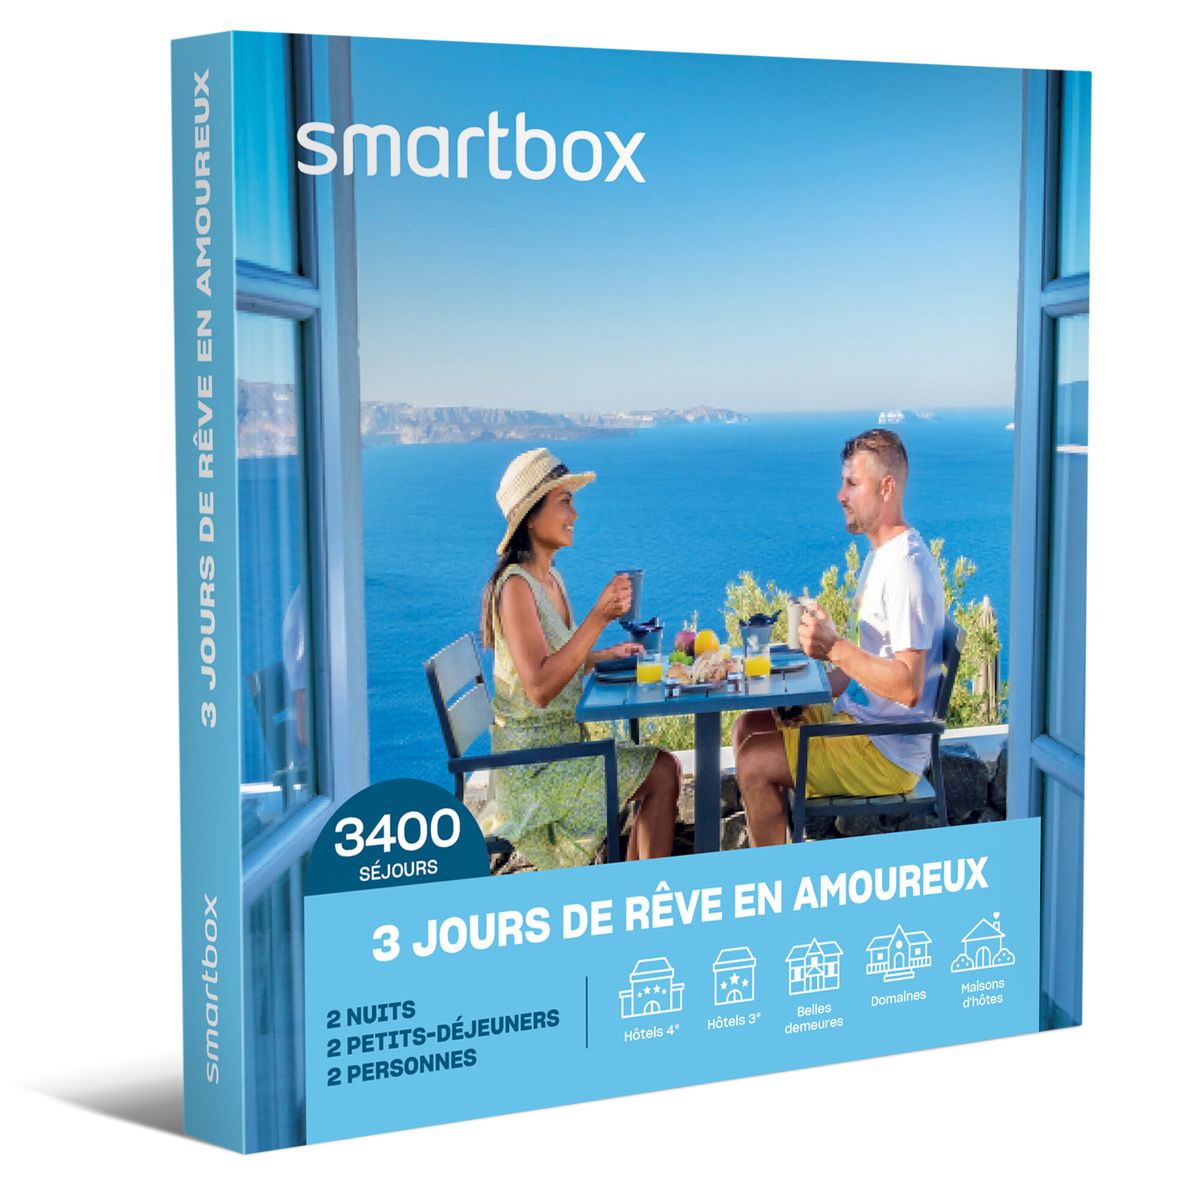 Smartbox 3 jours étoilés au Portugal - Coffret Cadeau Séjour pas